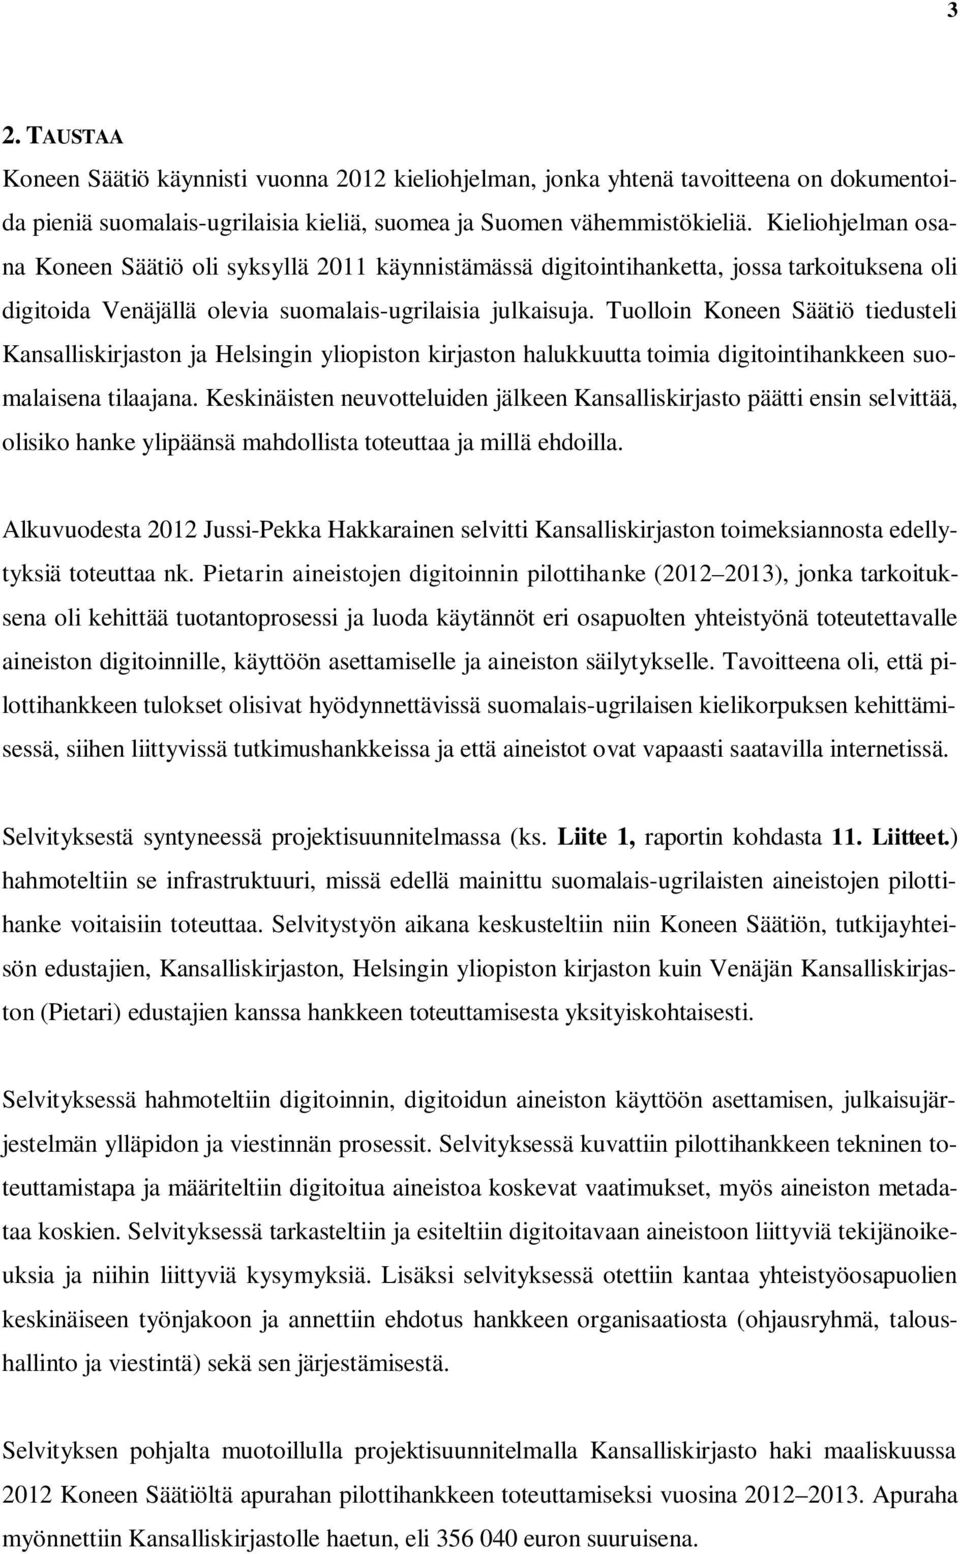 Tuolloin Koneen Säätiö tiedusteli Kansalliskirjaston ja Helsingin yliopiston kirjaston halukkuutta toimia digitointihankkeen suomalaisena tilaajana.